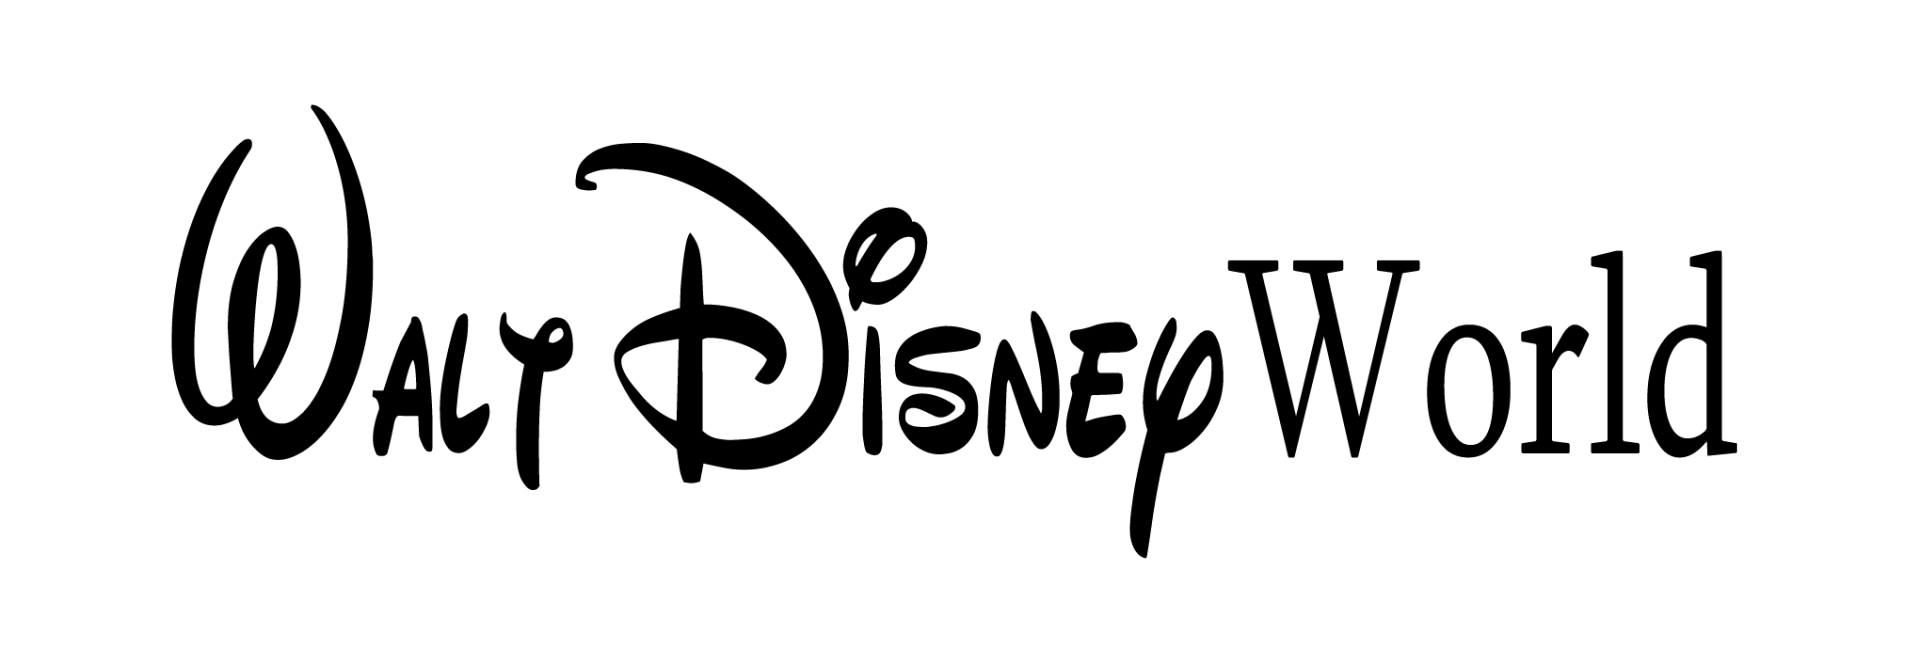 Disney World Logo - Walt Disney World Png Logo - Free Transparent PNG Logos